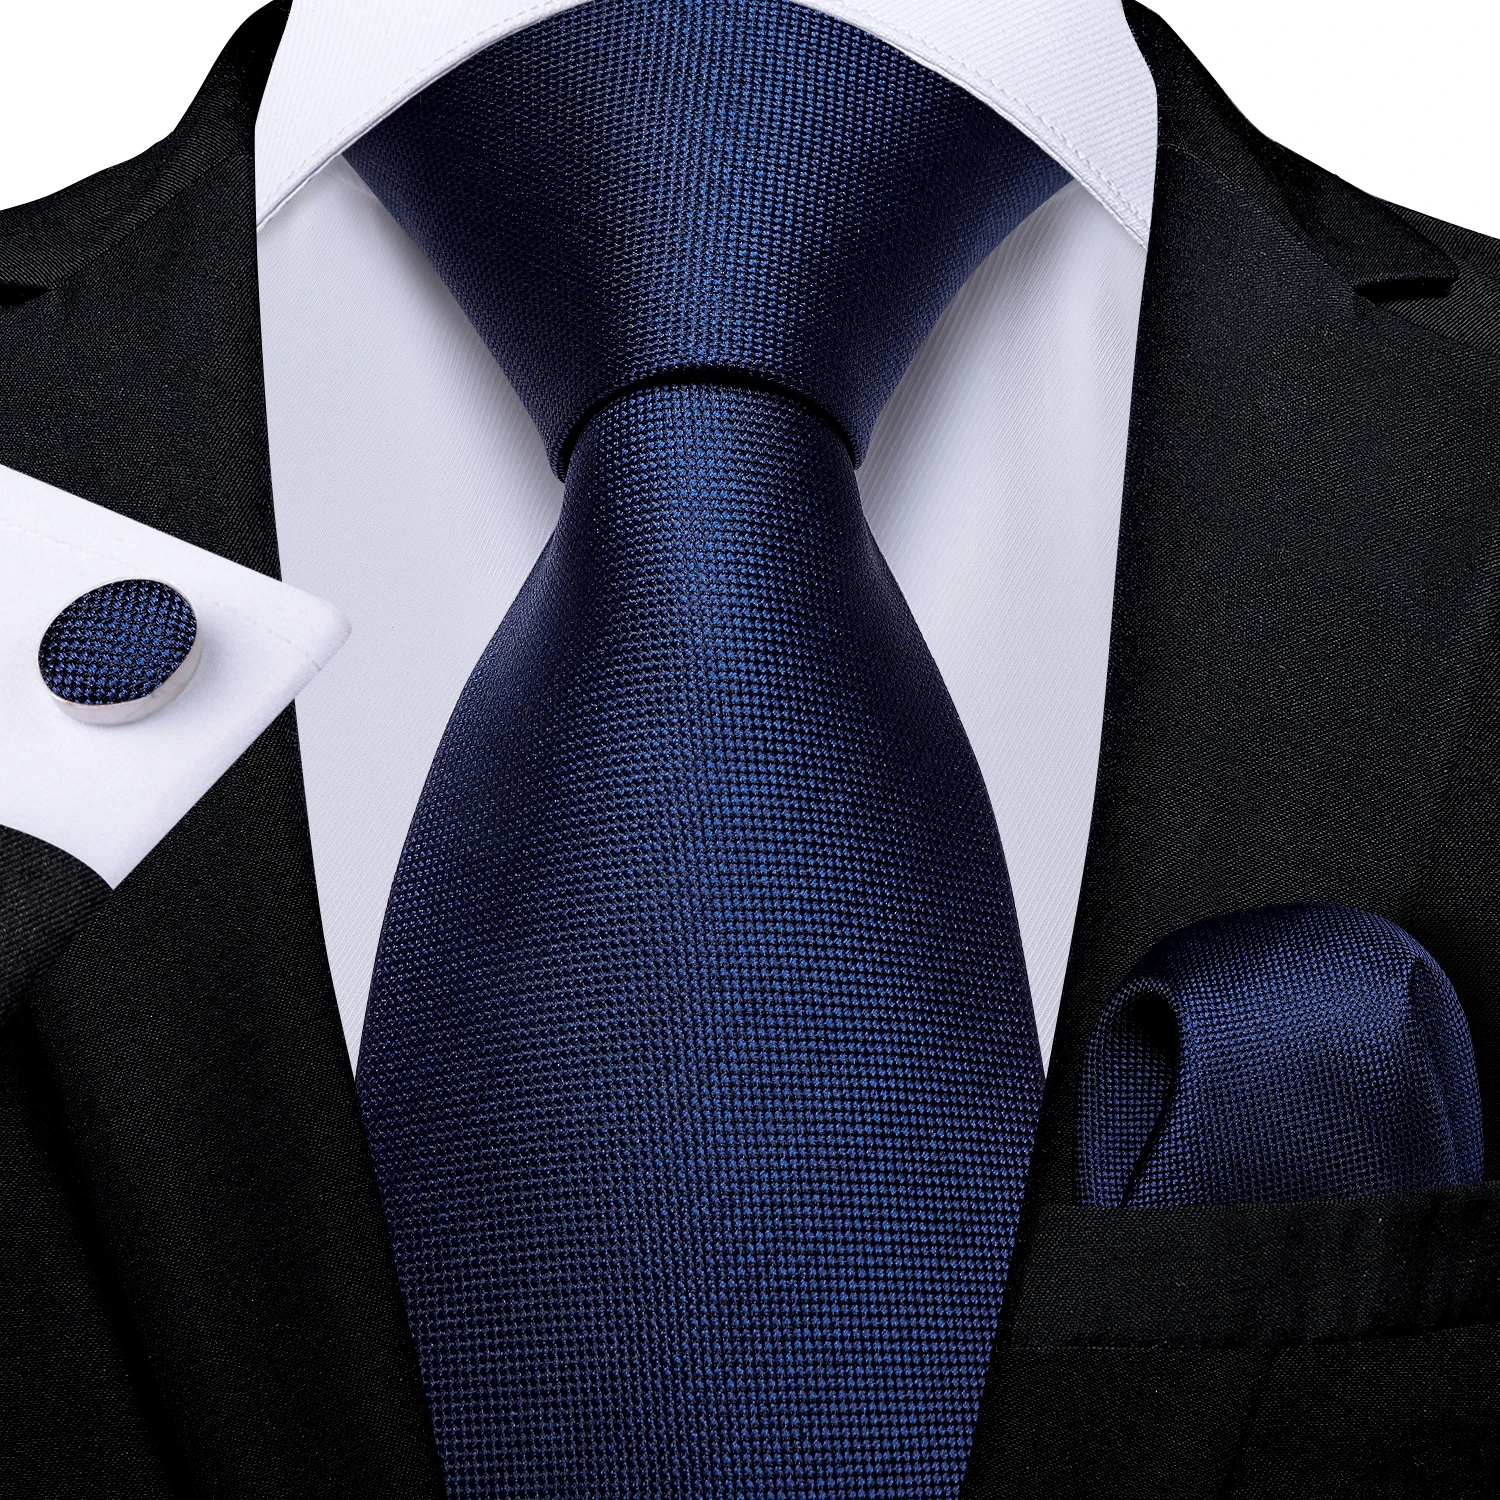 DiBanGu Top Navy Blue Solid Tie for Men 100% Silk Men's Tie Hanky Cufflinks Neck Tie Suit Business Wedding Party Tie Set MJ-7140